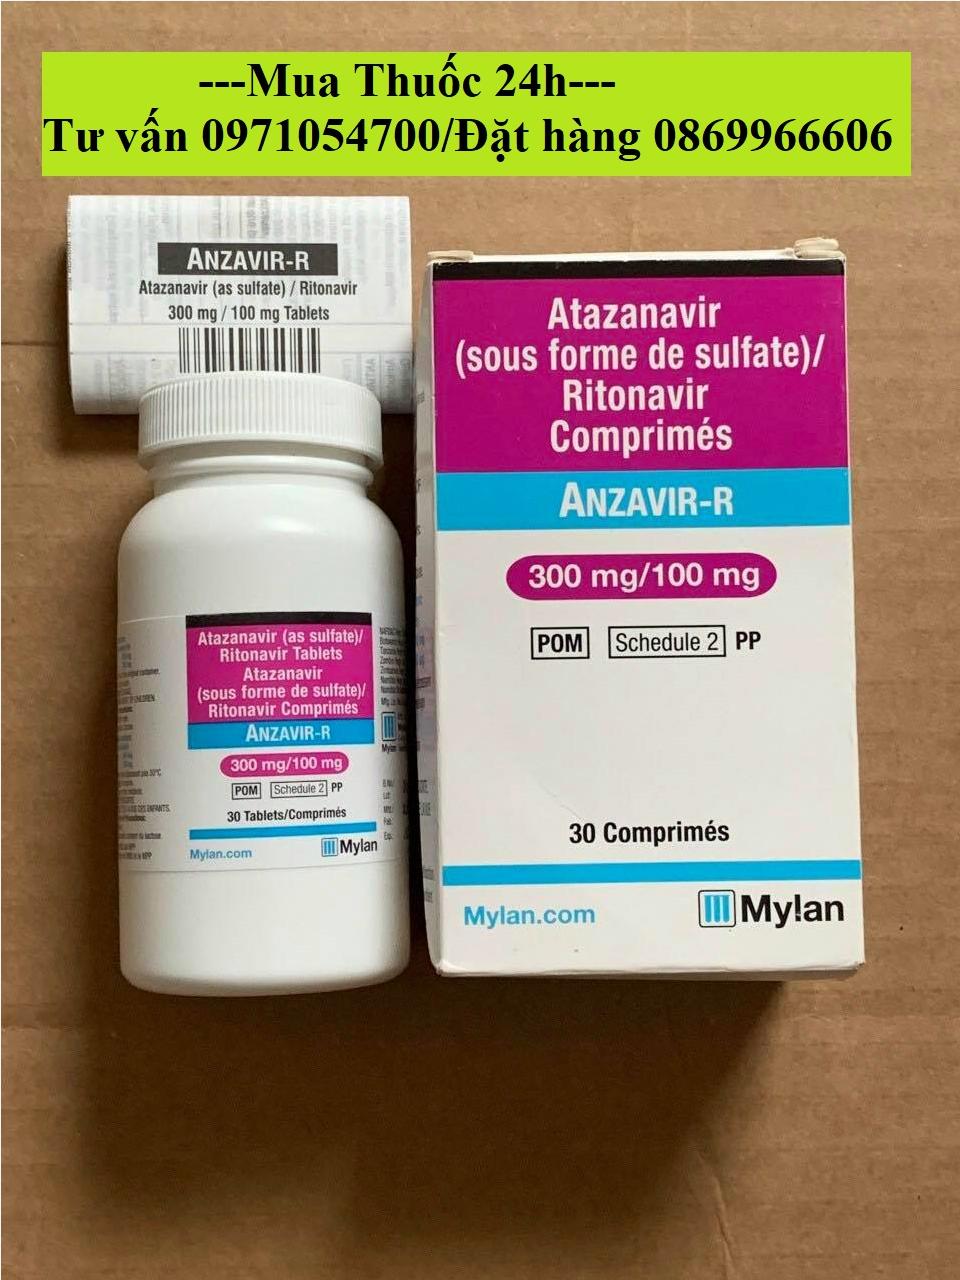 Thuốc Anzavir R Mylan giá bao nhiêu mua ở đâu?